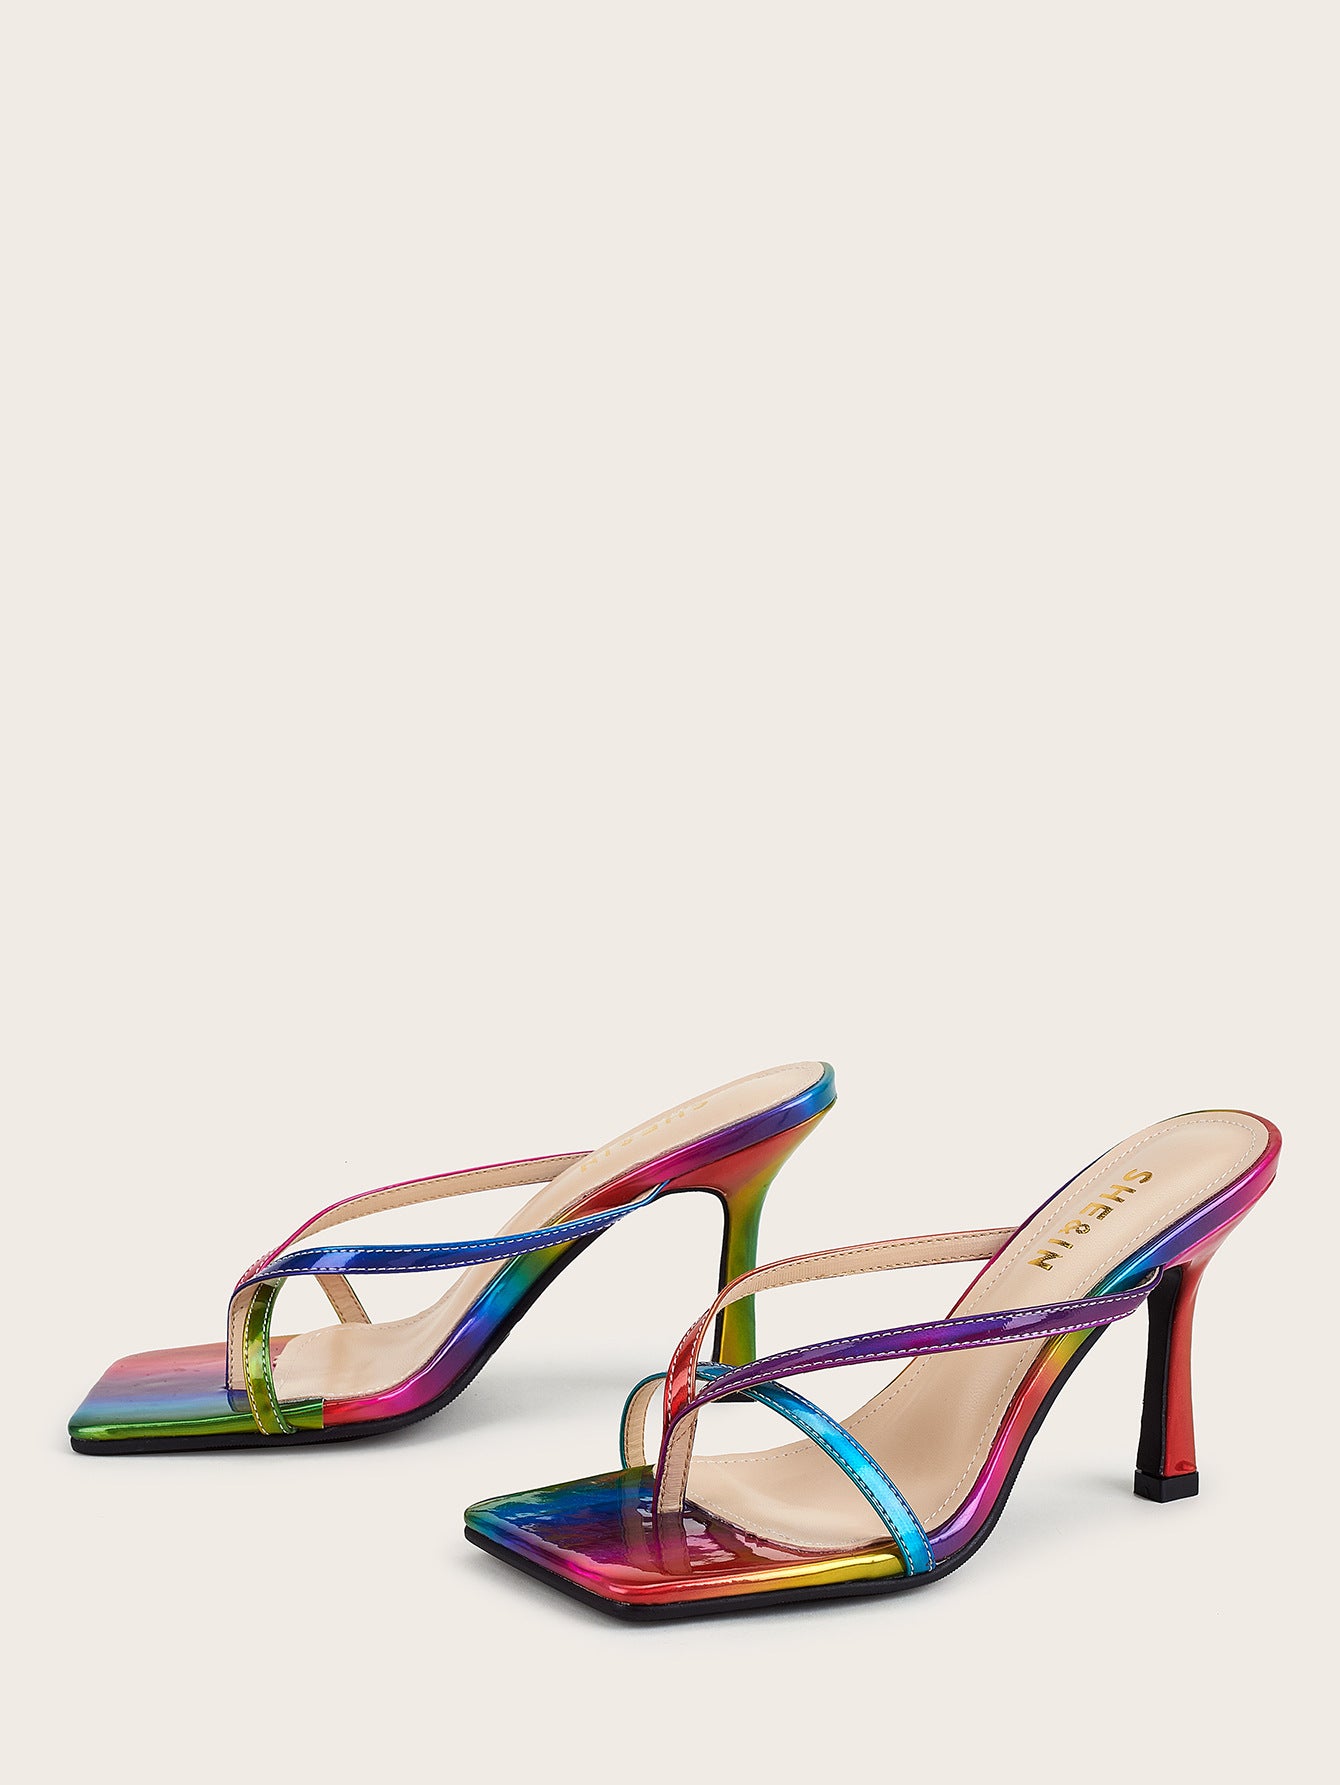 Stiletto high heels fashion color sandals women - ladieskits - 0